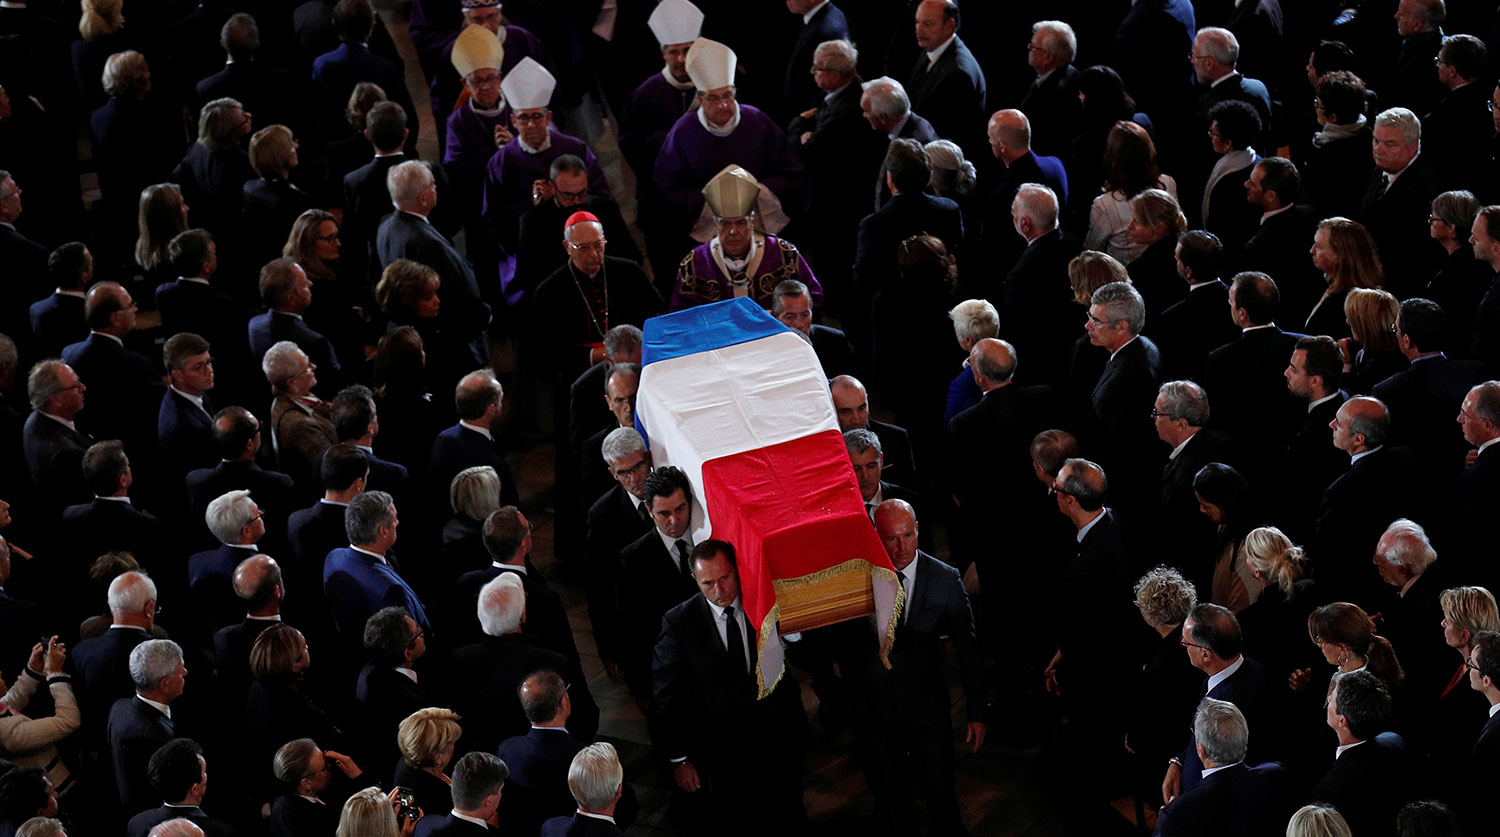 Во время церемонии прощания с бывшим президентом Франции (1995-2007) Жаком Шираком в церкви Святого Сульпиция в Париже, 30 сентября 2019 года
